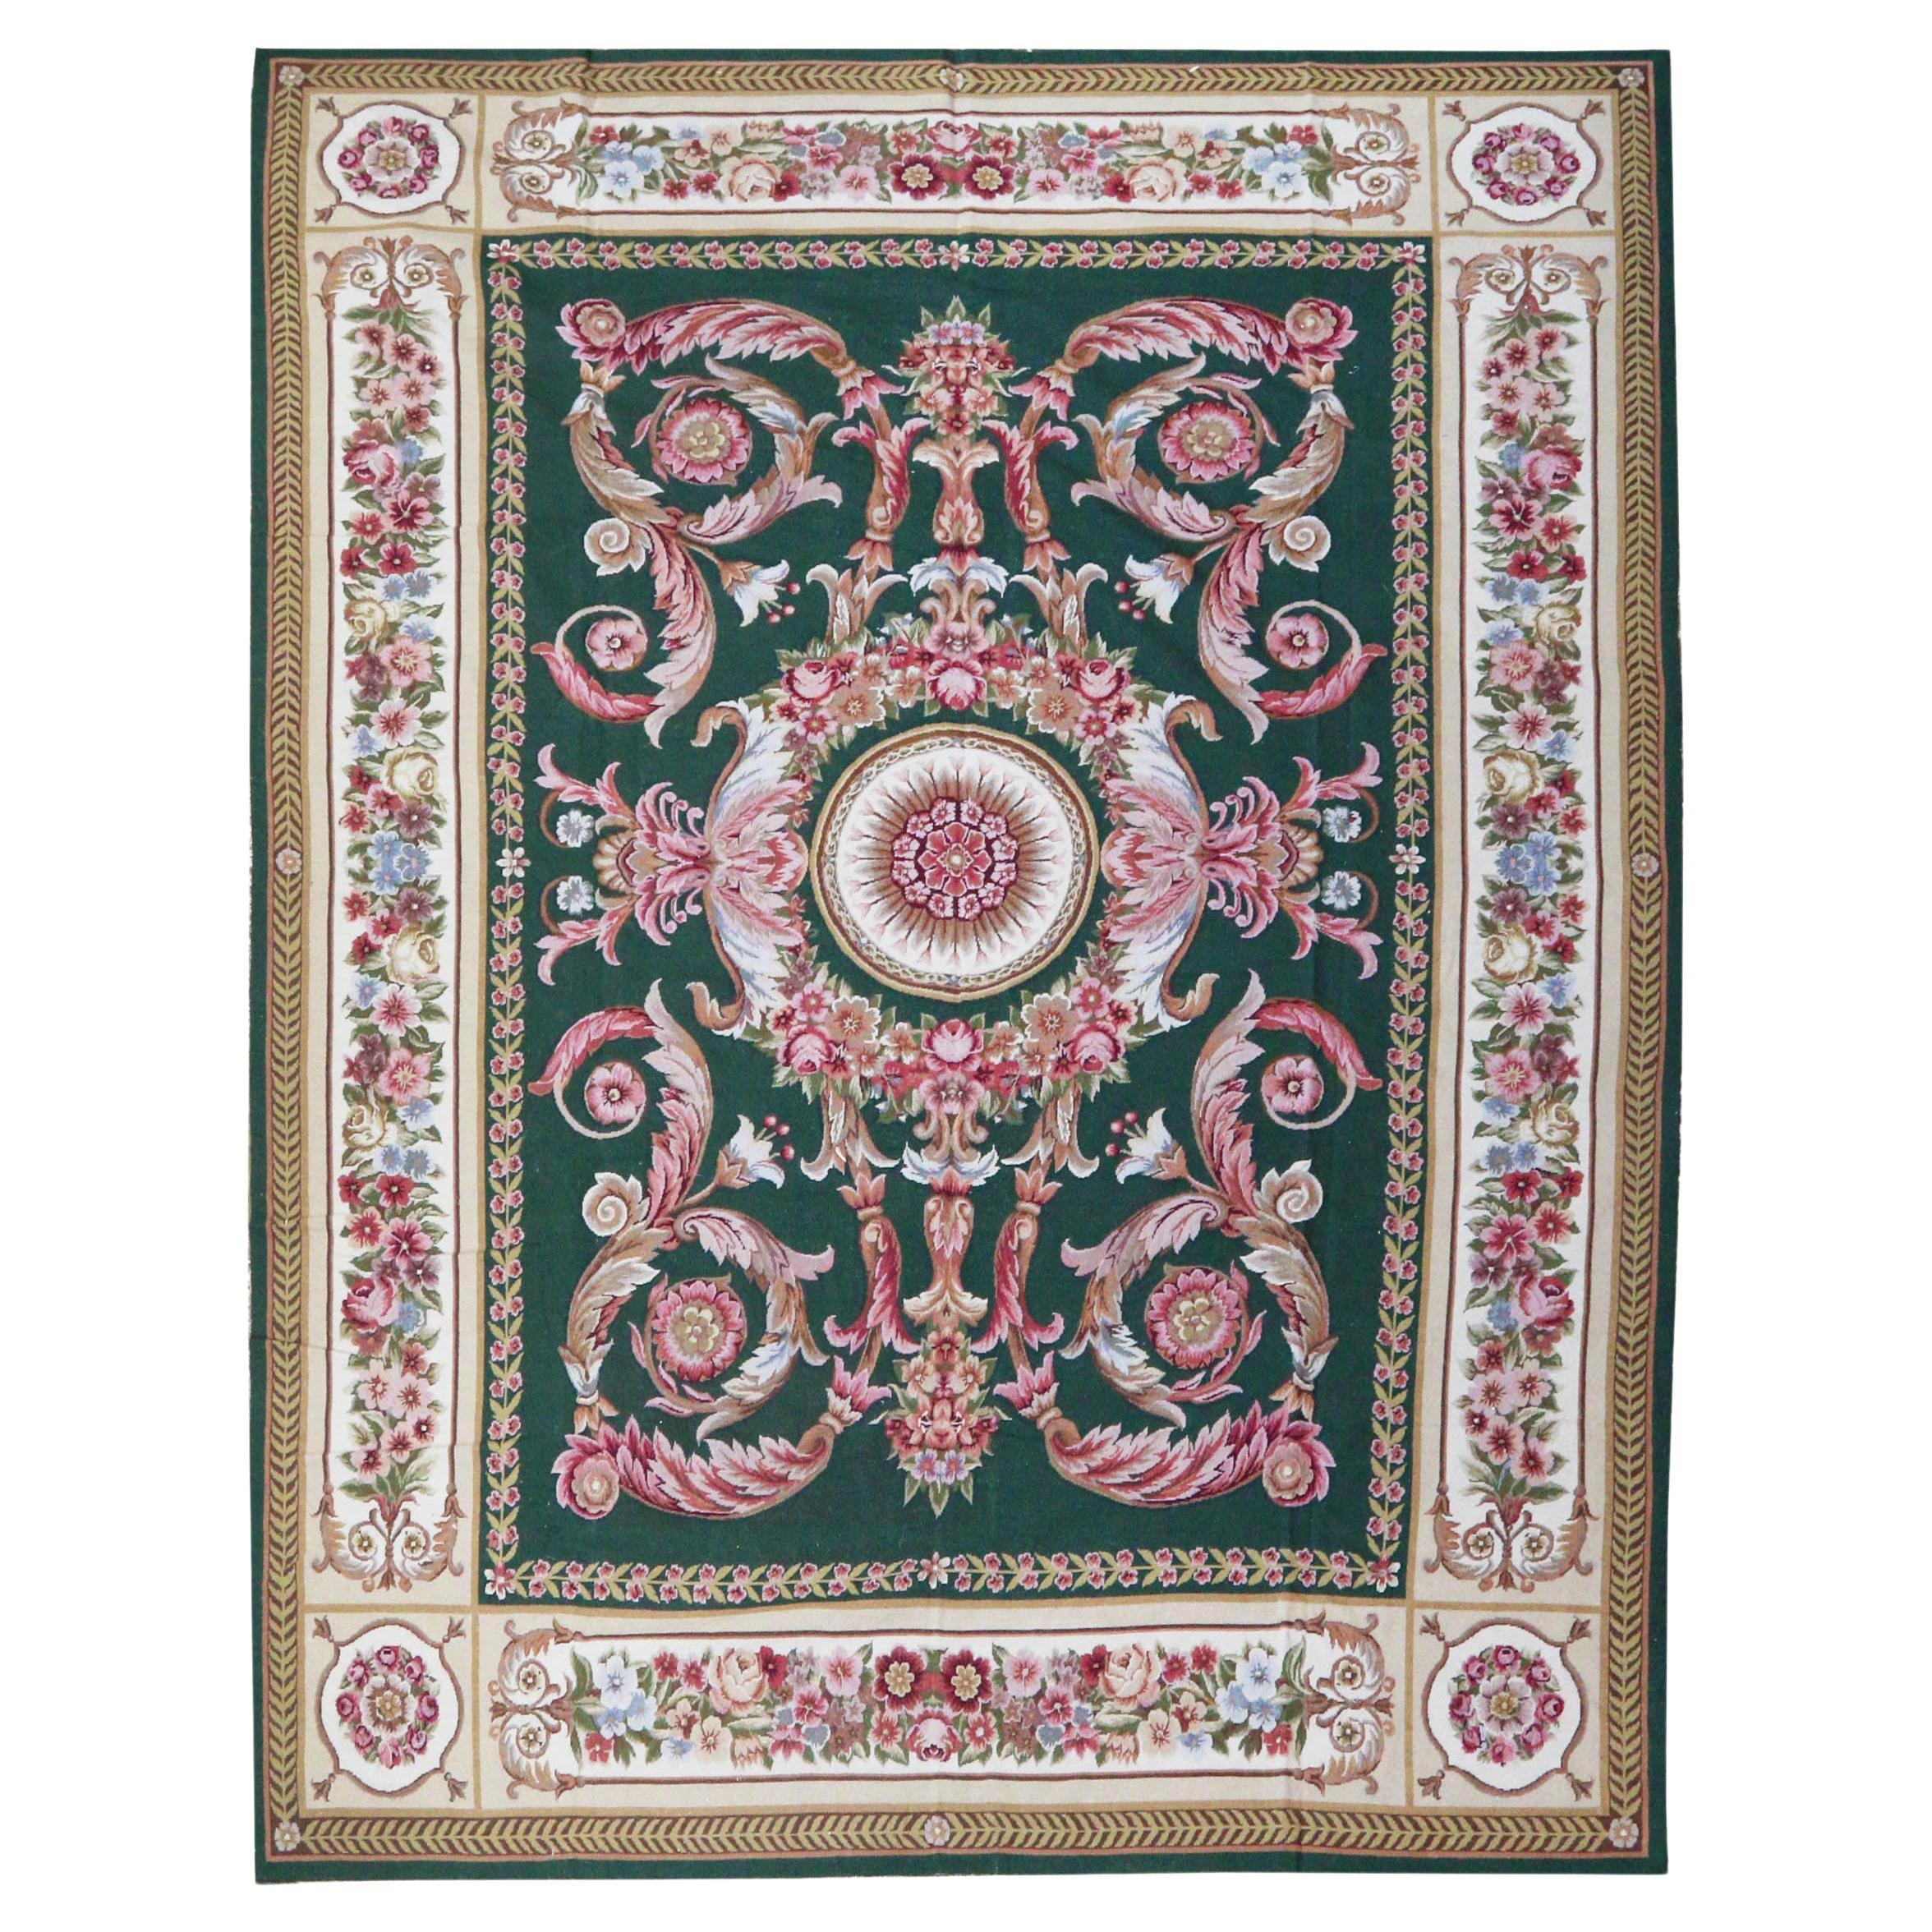 Nadelspitze-Teppich im Empire-Stil in Grün und Rosa